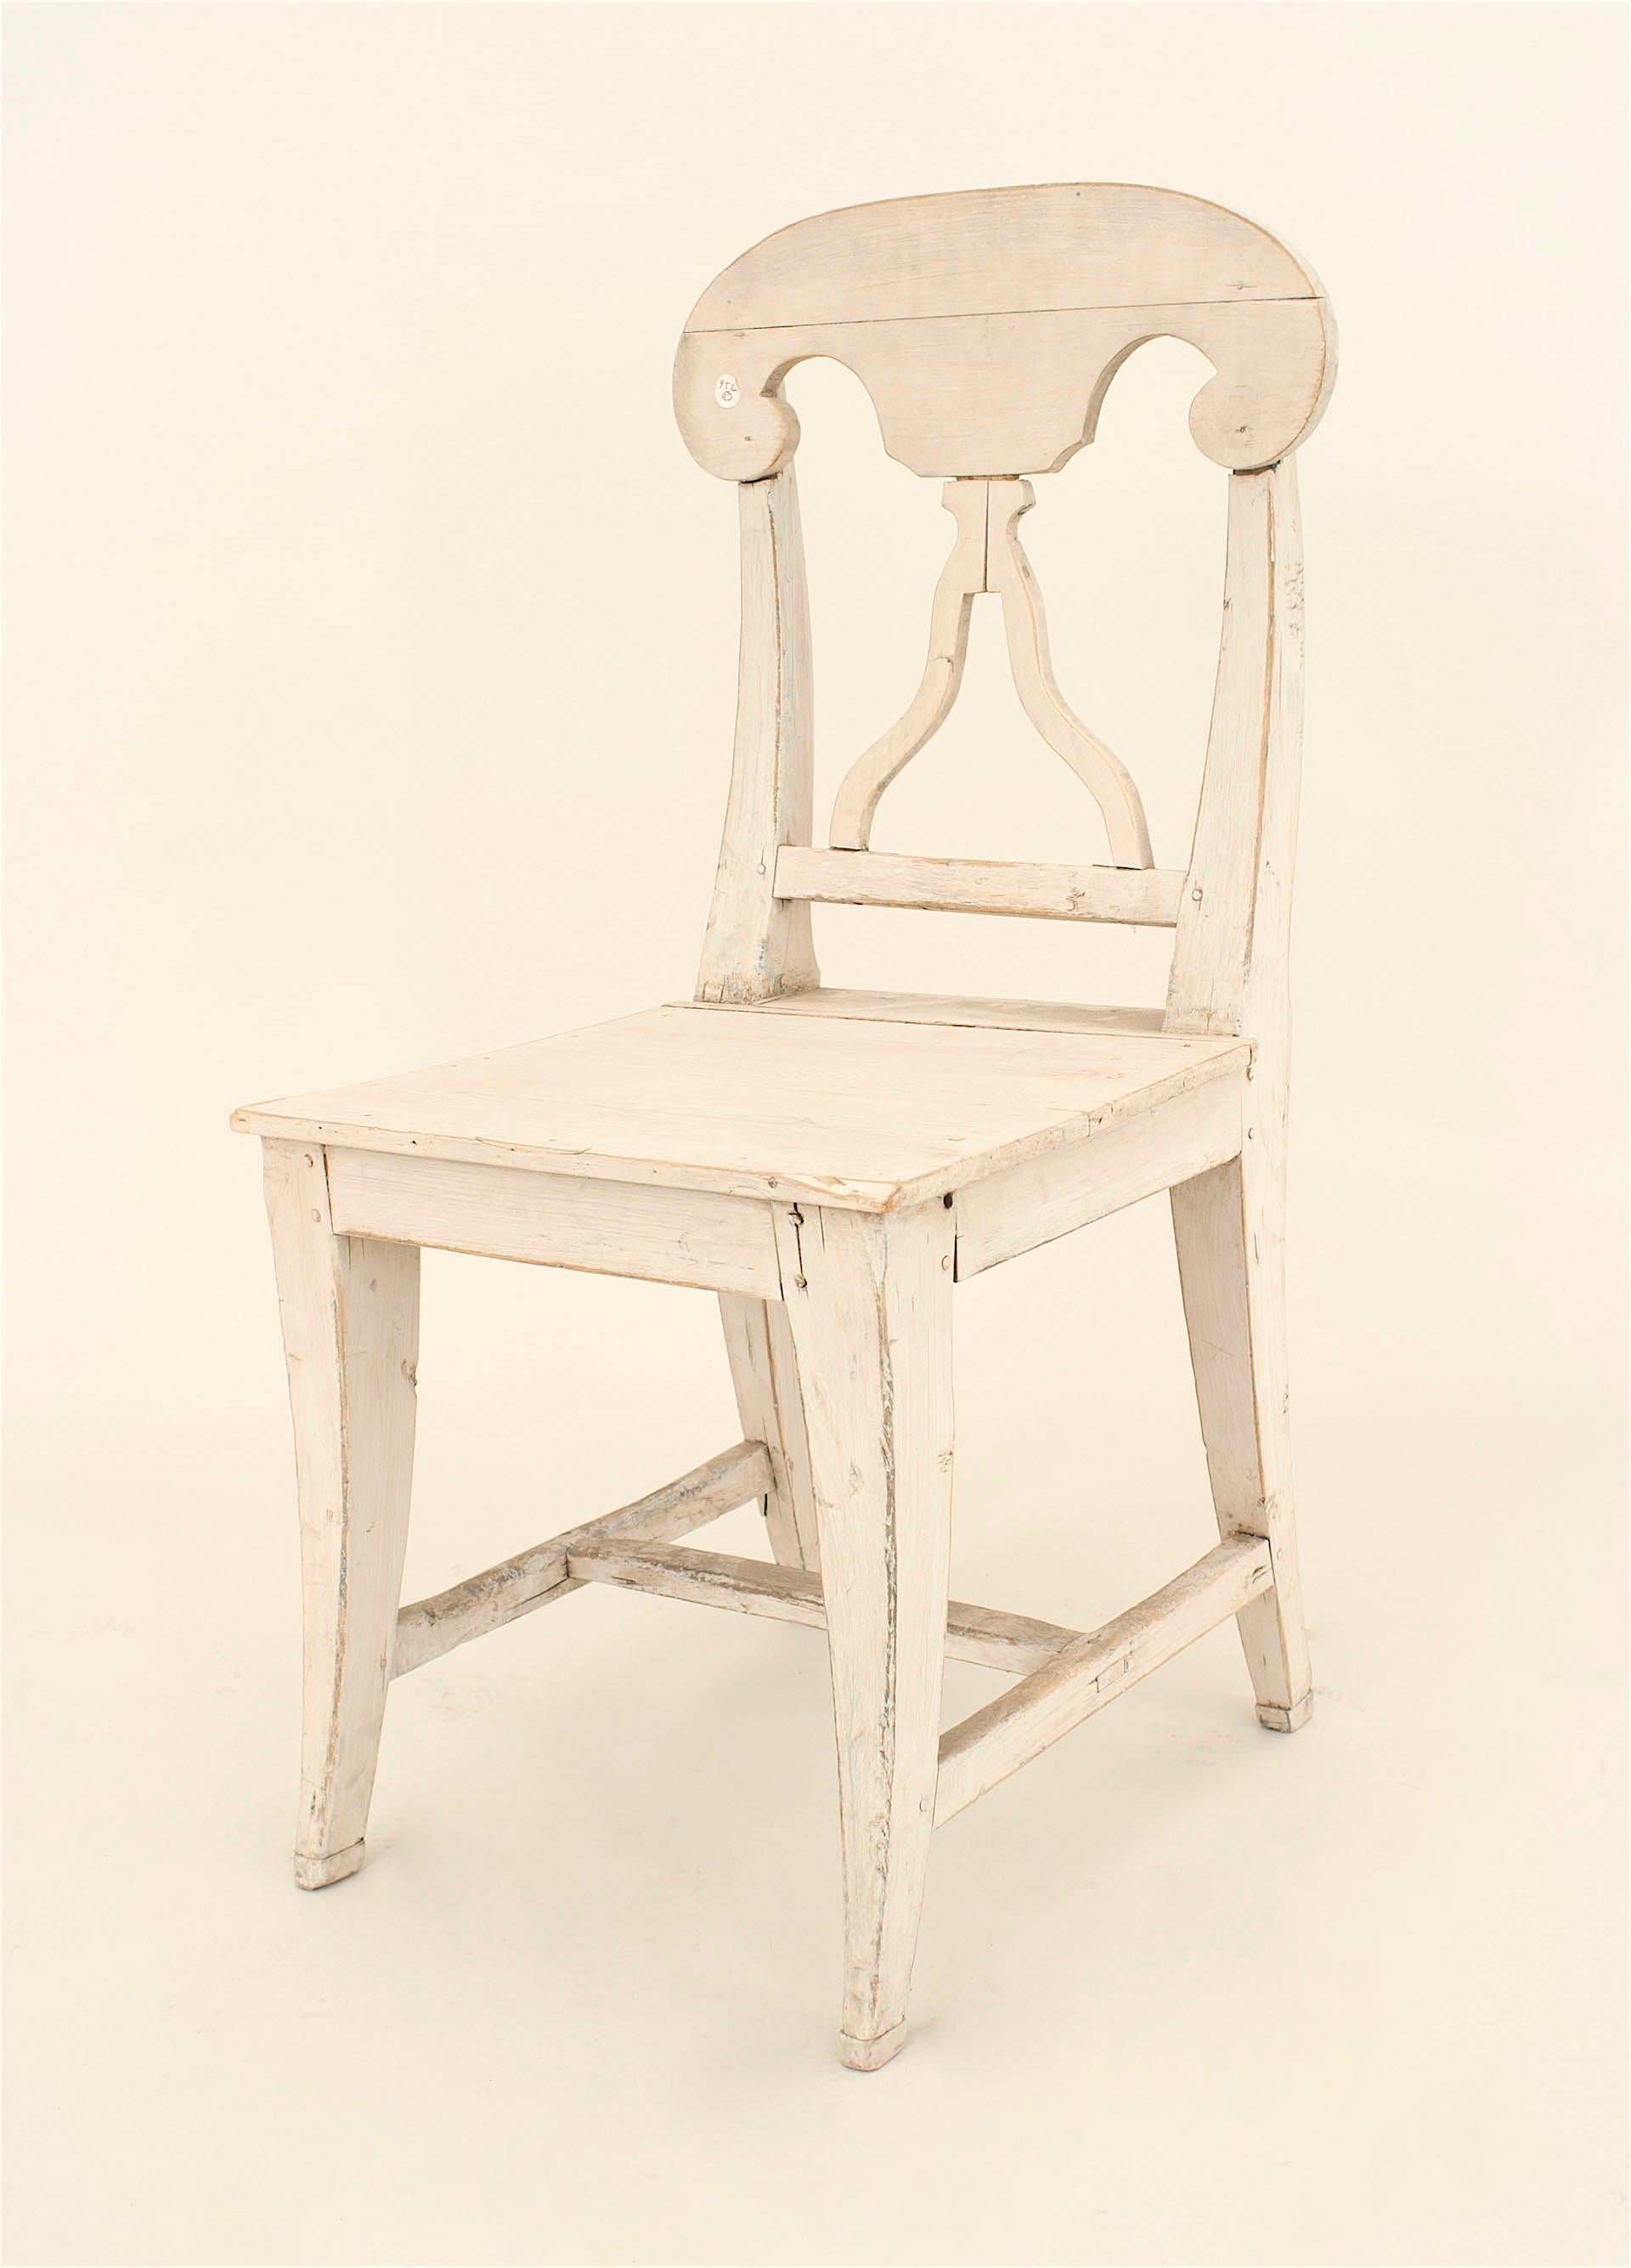 Ensemble de 6 chaises d'appoint suédoises de style gustavien du milieu du siècle, avec une finition peinte en blanc antique et un dossier ouvert.
